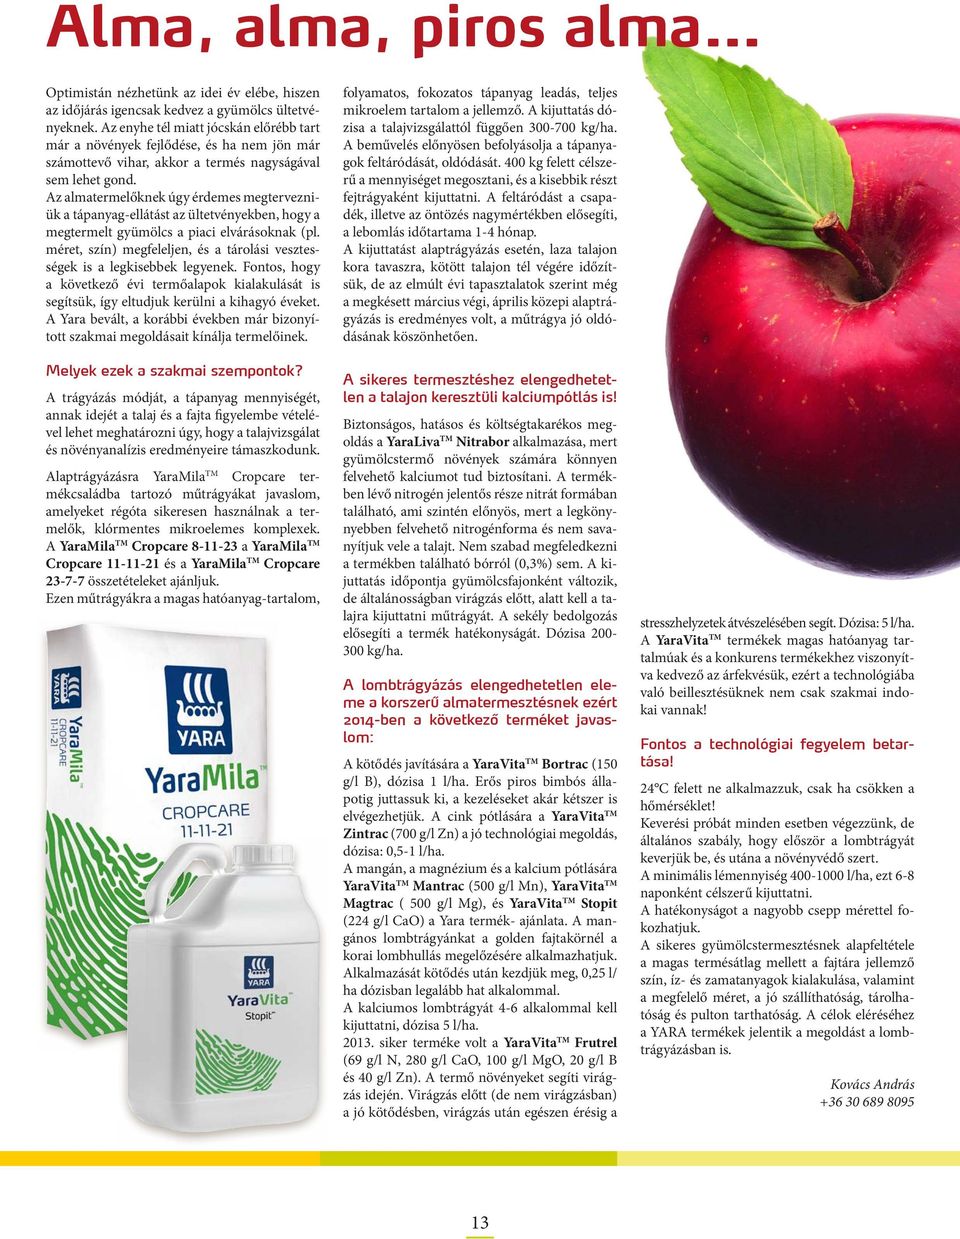 Az almatermelőknek úgy érdemes megtervezniük a tápanyag-ellátást az ültetvényekben, hogy a megtermelt gyümölcs a piaci elvárásoknak (pl.